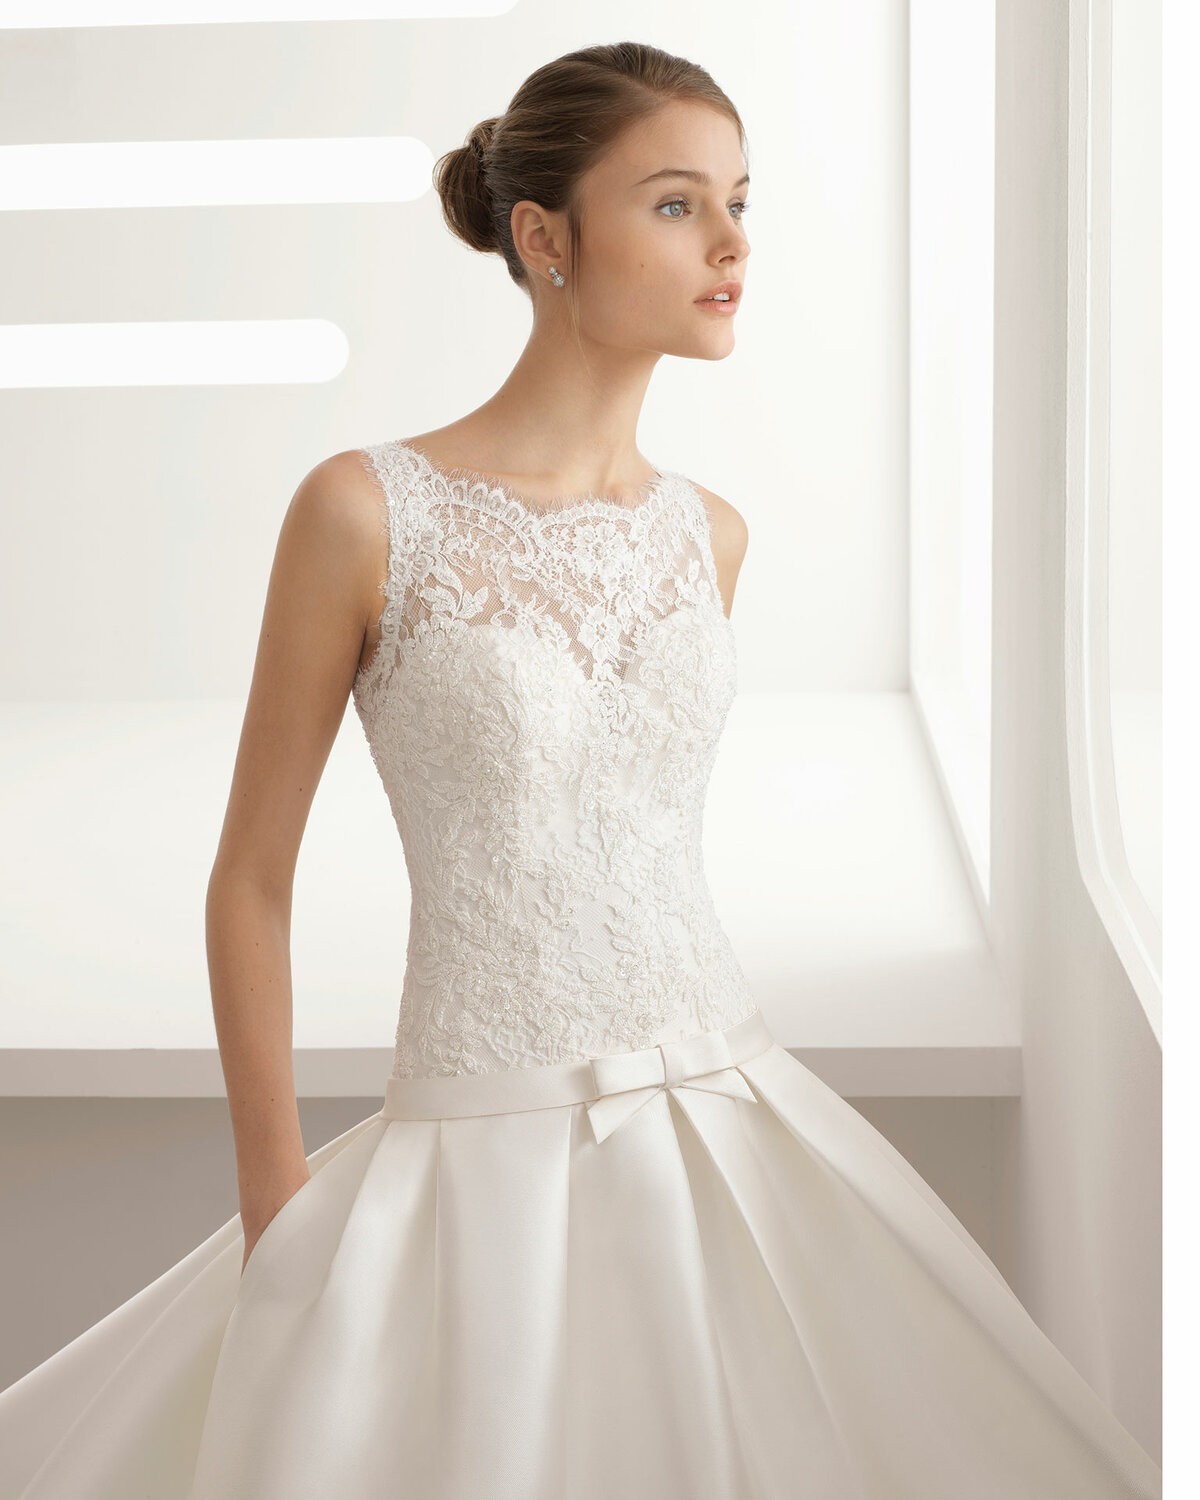 ARIZONA - abito da sposa collezione 2020 - Rosa Clarà